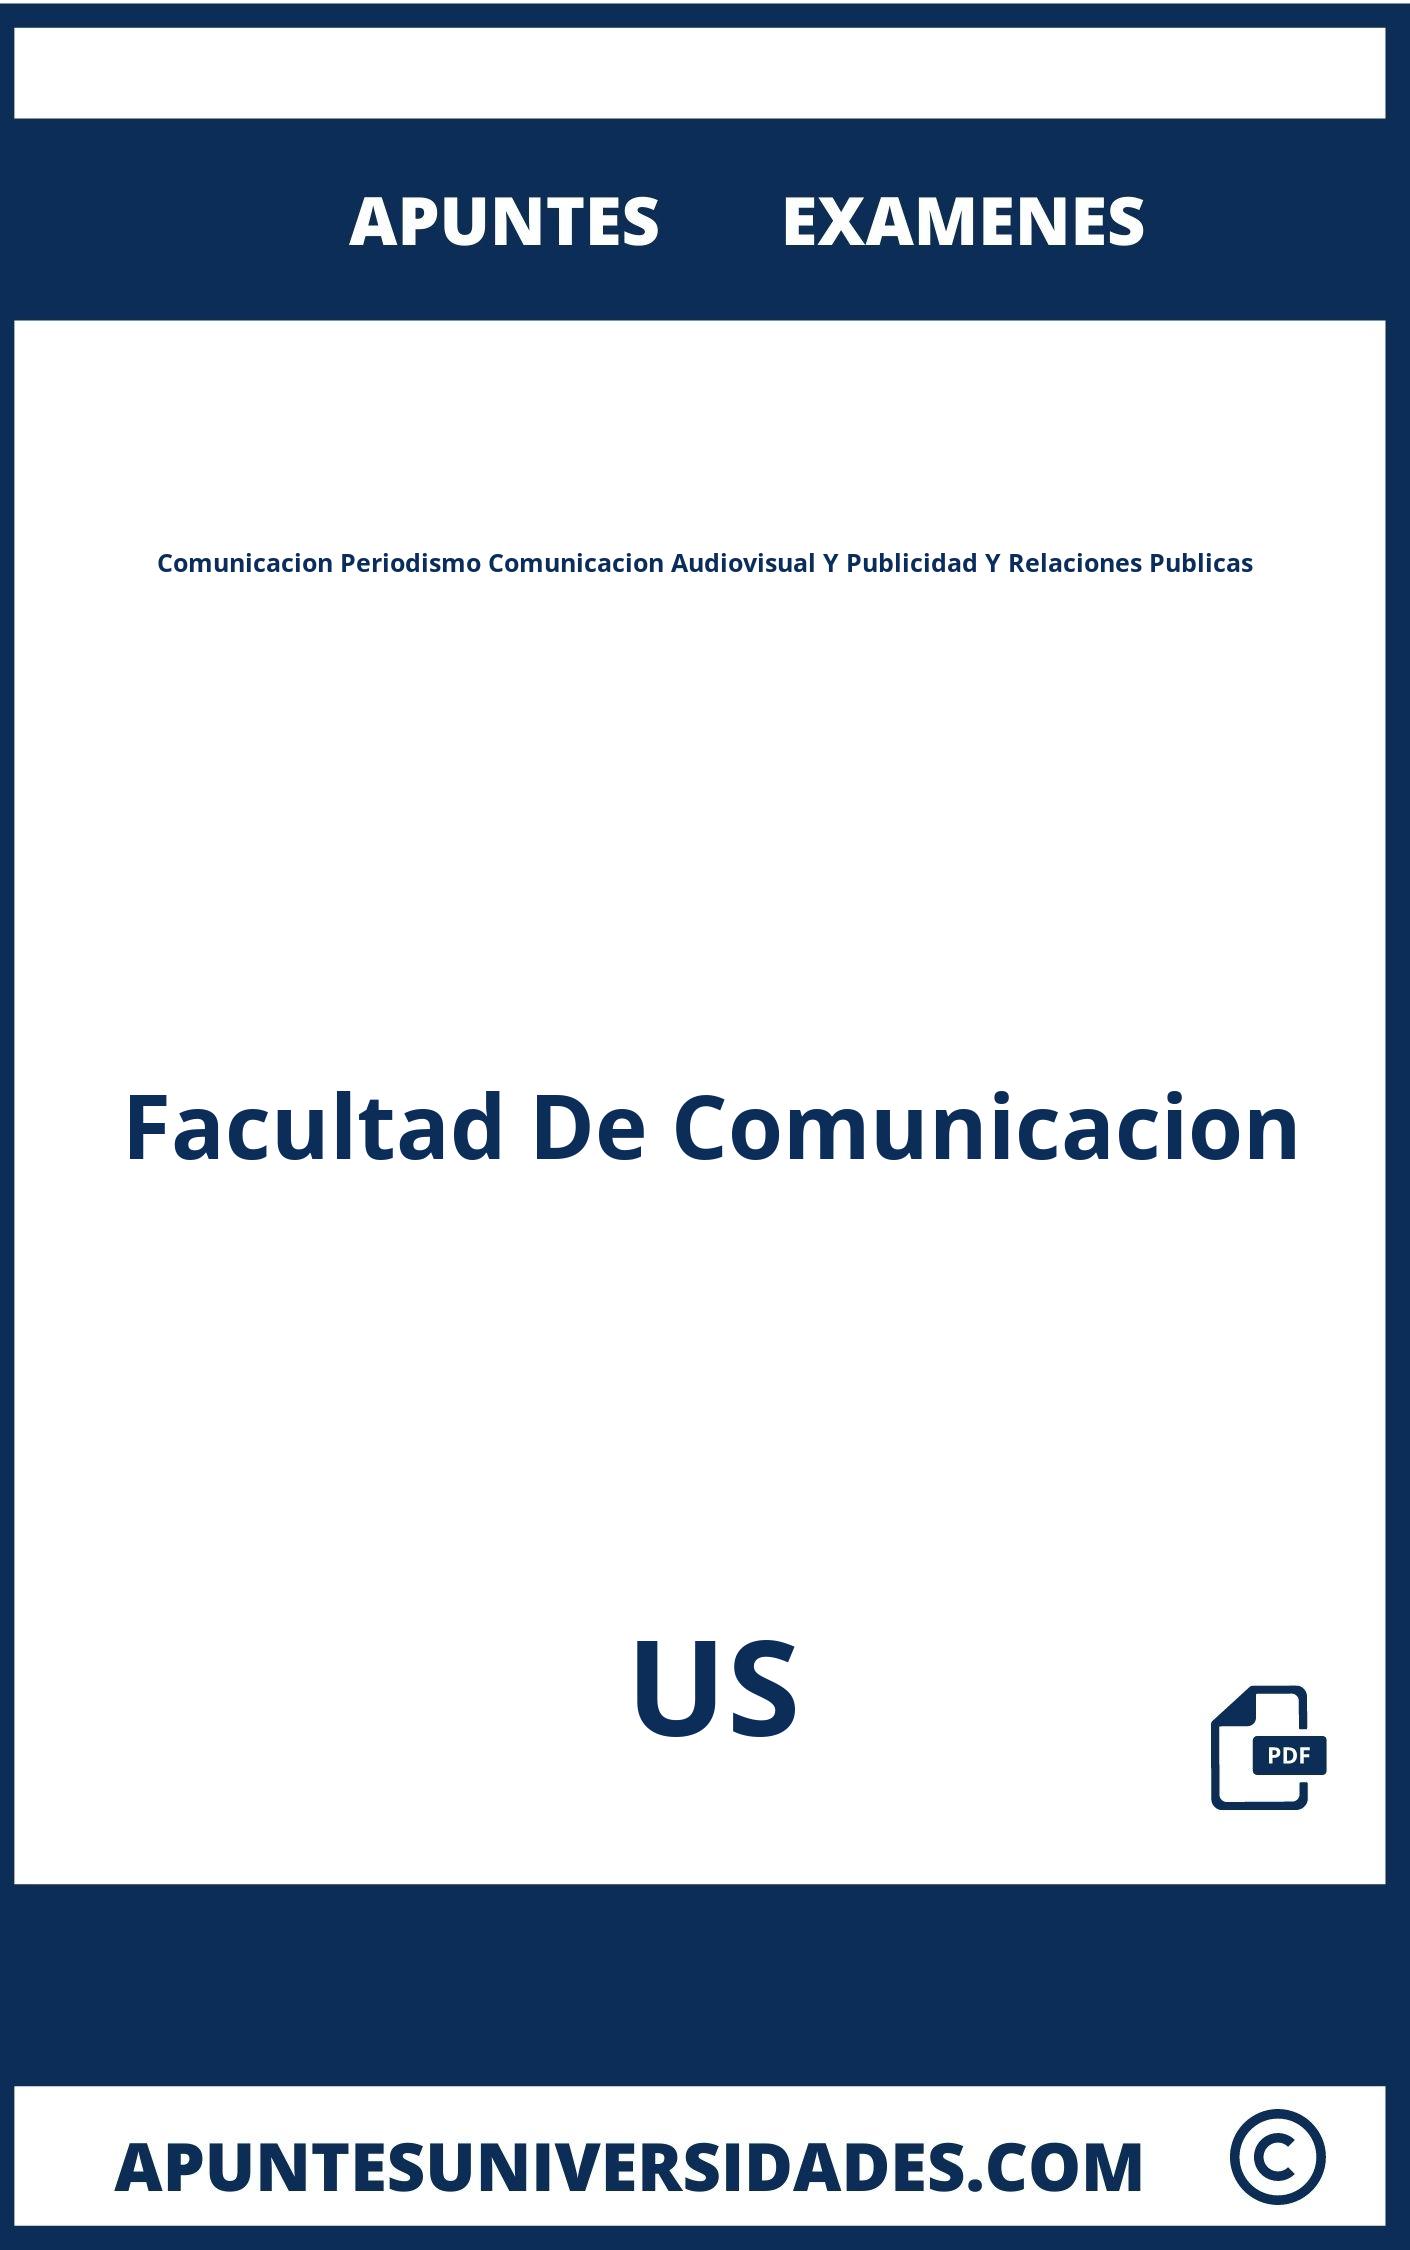 Apuntes y Examenes Comunicacion Periodismo Comunicacion Audiovisual Y Publicidad Y Relaciones Publicas US